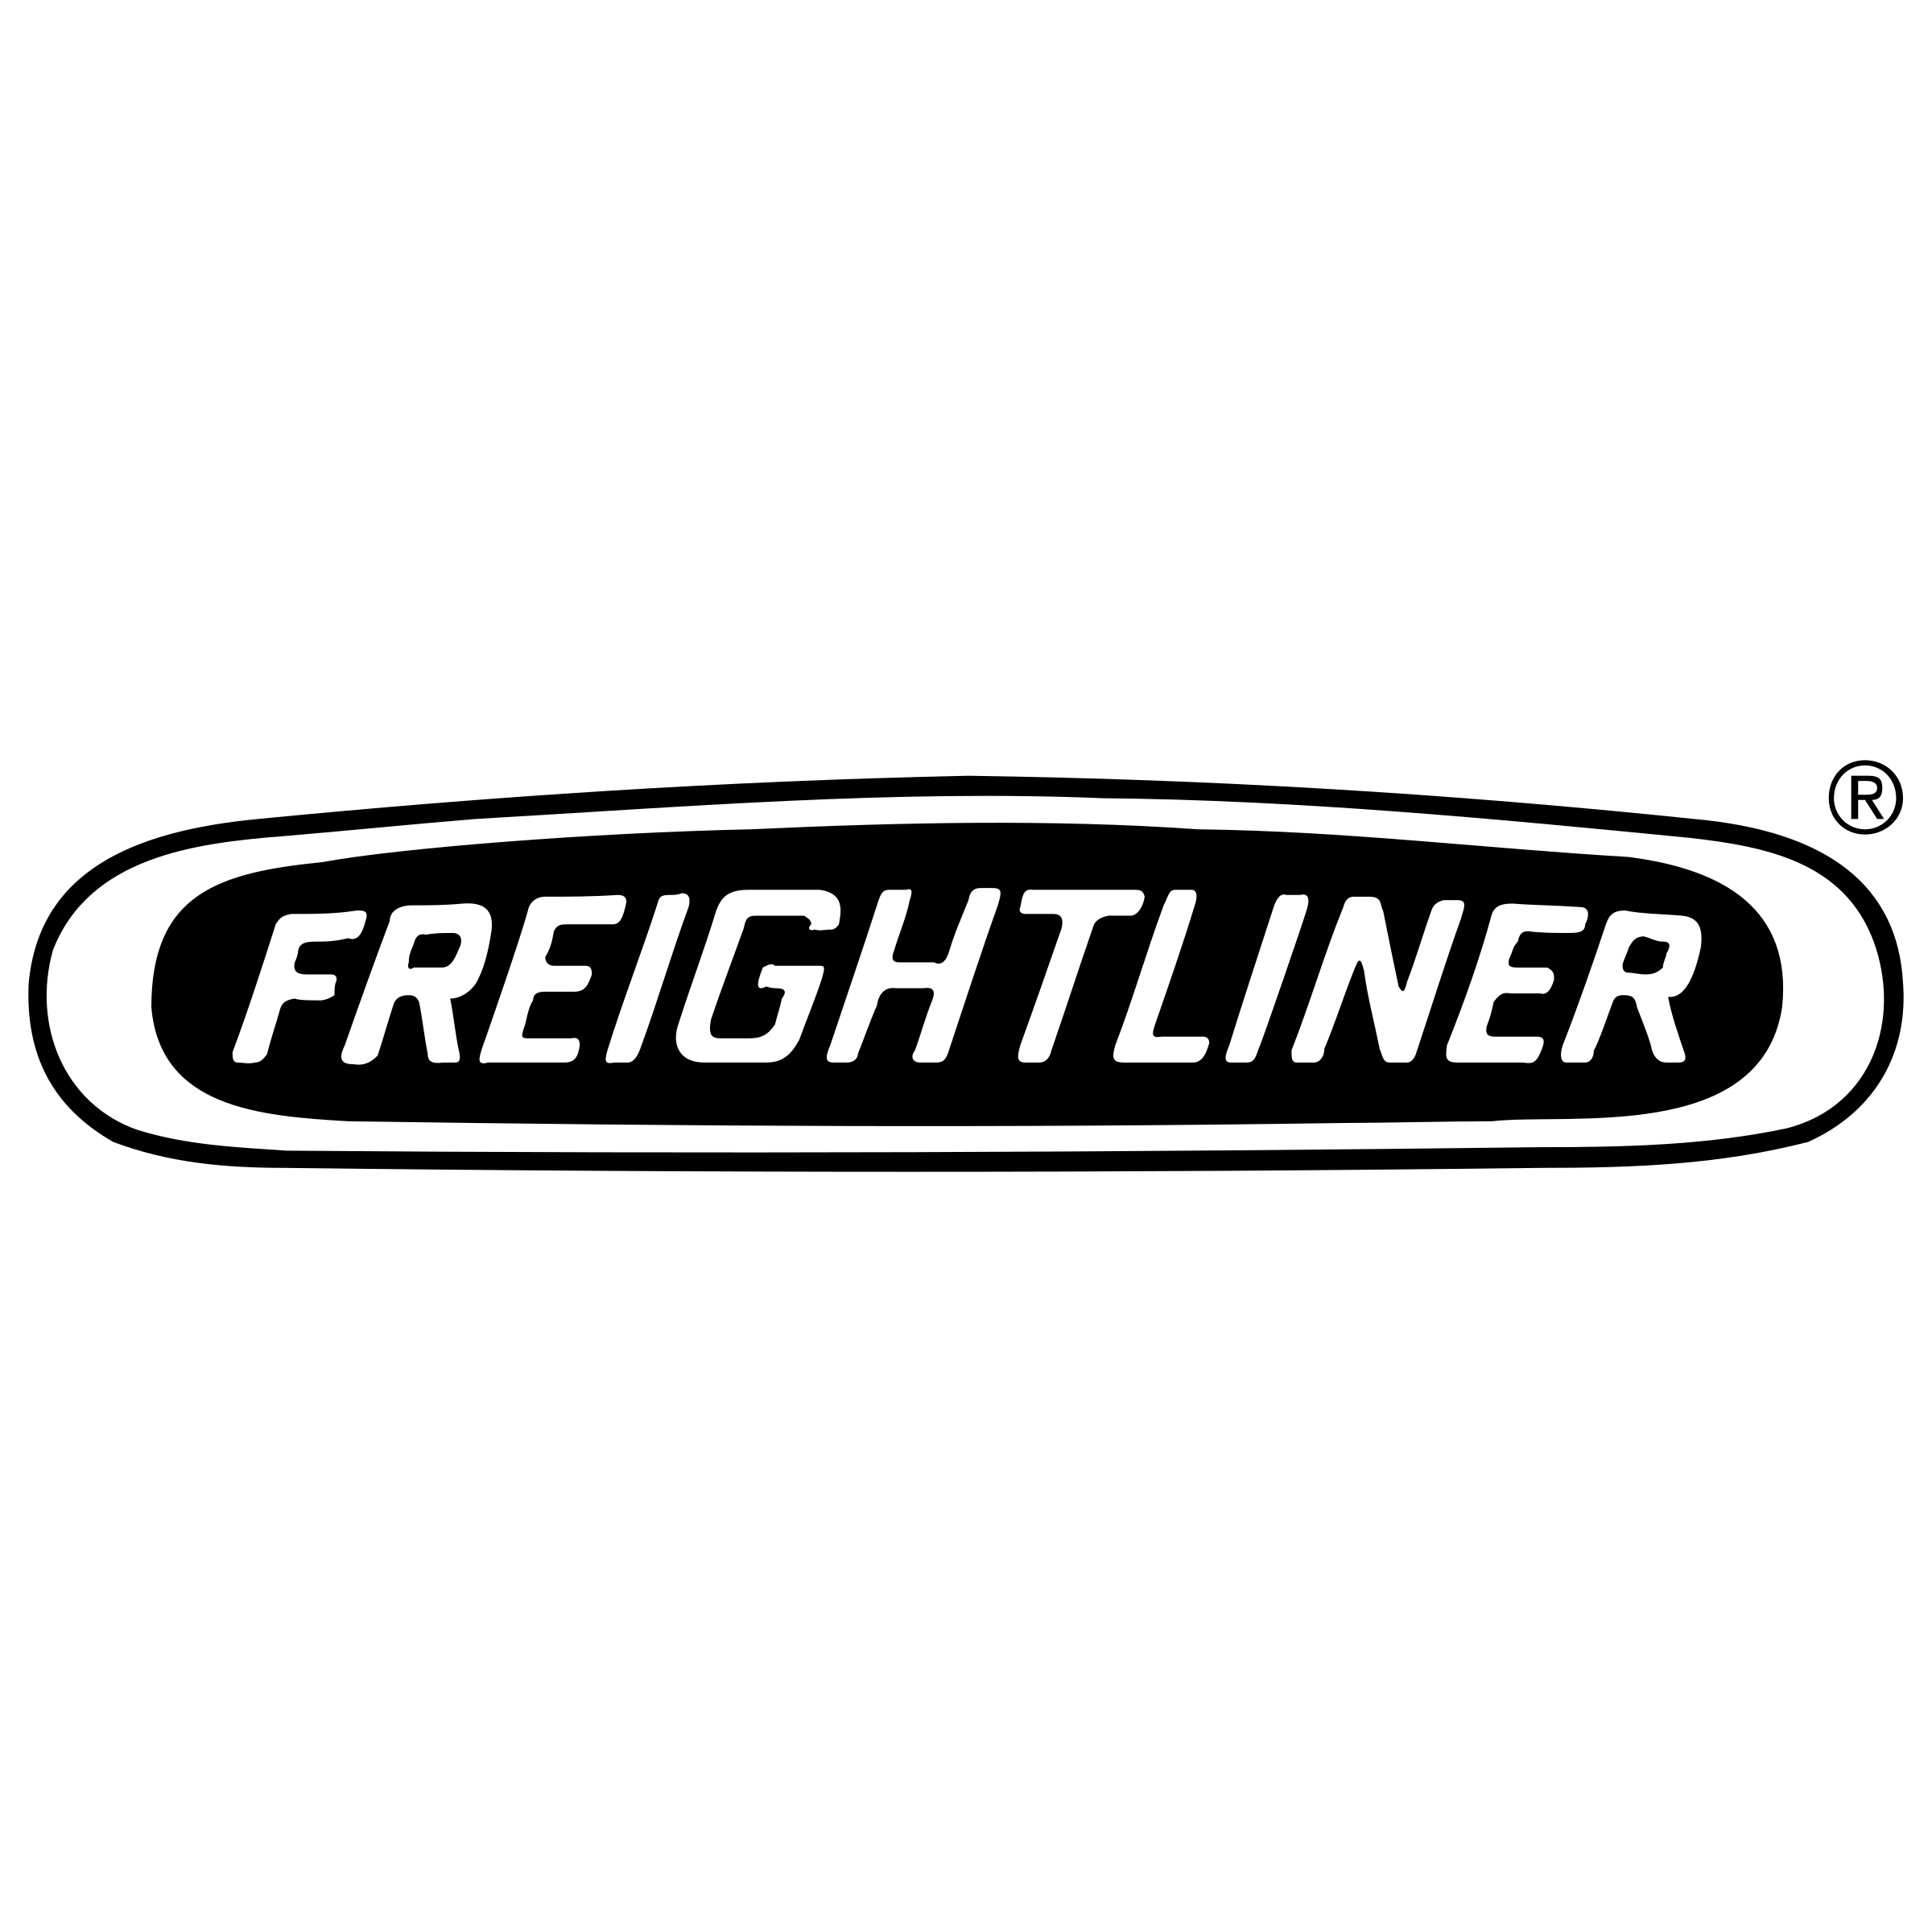 freightliner-trucks-1-logo-png-transparent.png